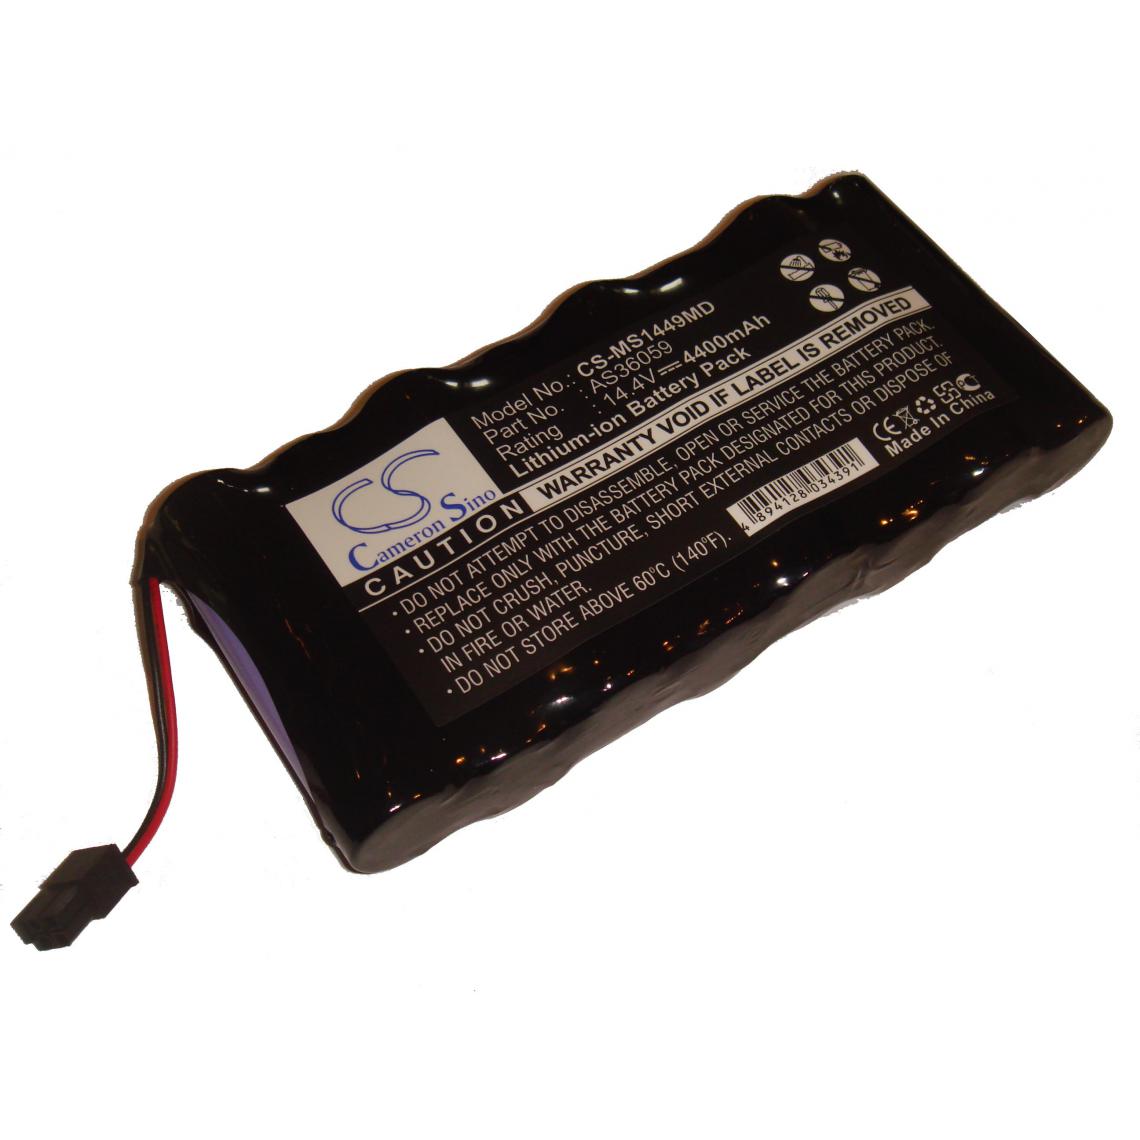 Vhbw - vhbw Batterie Li-Ion 4400mAh (14.4V) pour moniteur de contrôle Critikon Systems Dinamap Plus 8710, 8720, 8725 remplace AS36059. - Piles spécifiques